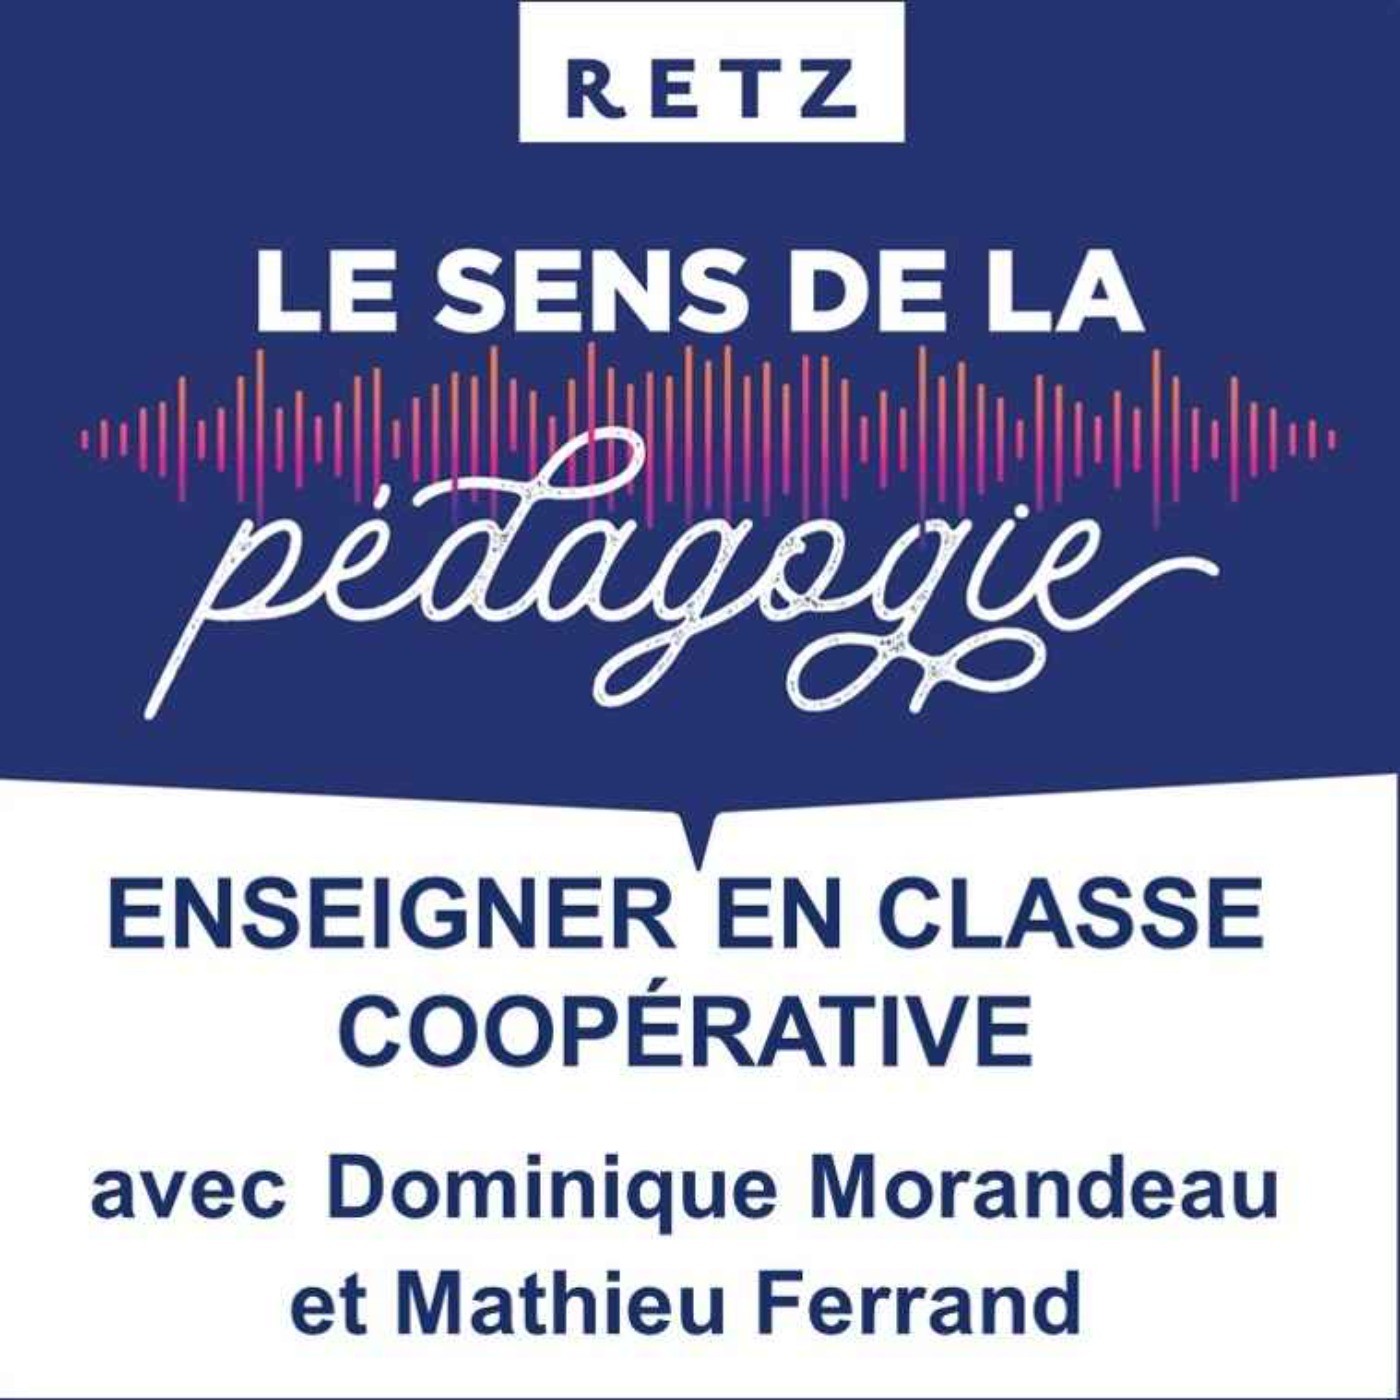 Enseigner en classe coopérative (Dominique Morandeau et Mathieu Ferrand) - #04